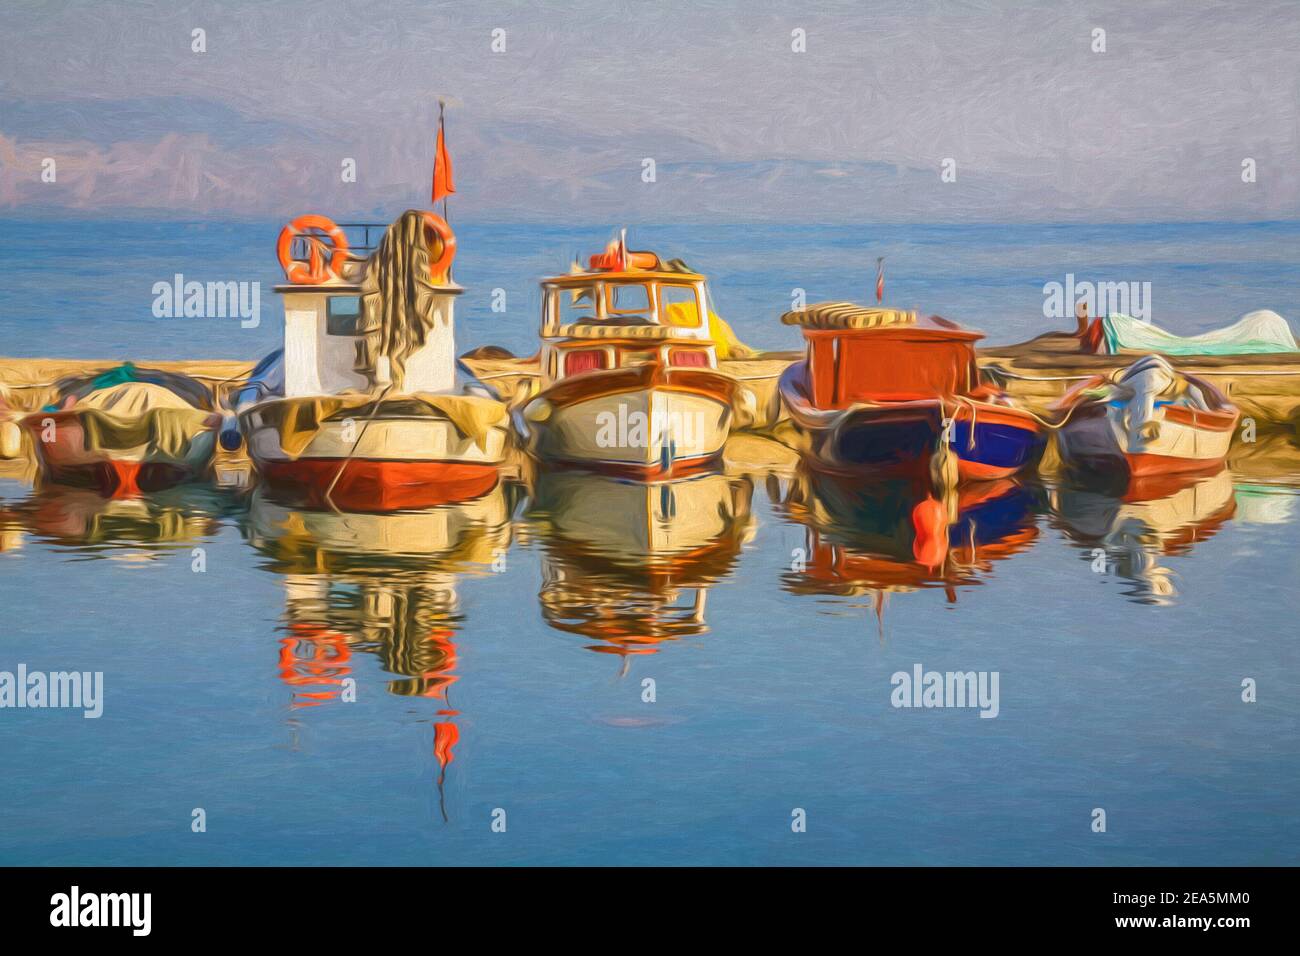 Pittura digitale di barche in un porto, riflessa nell'acqua. Foto Stock